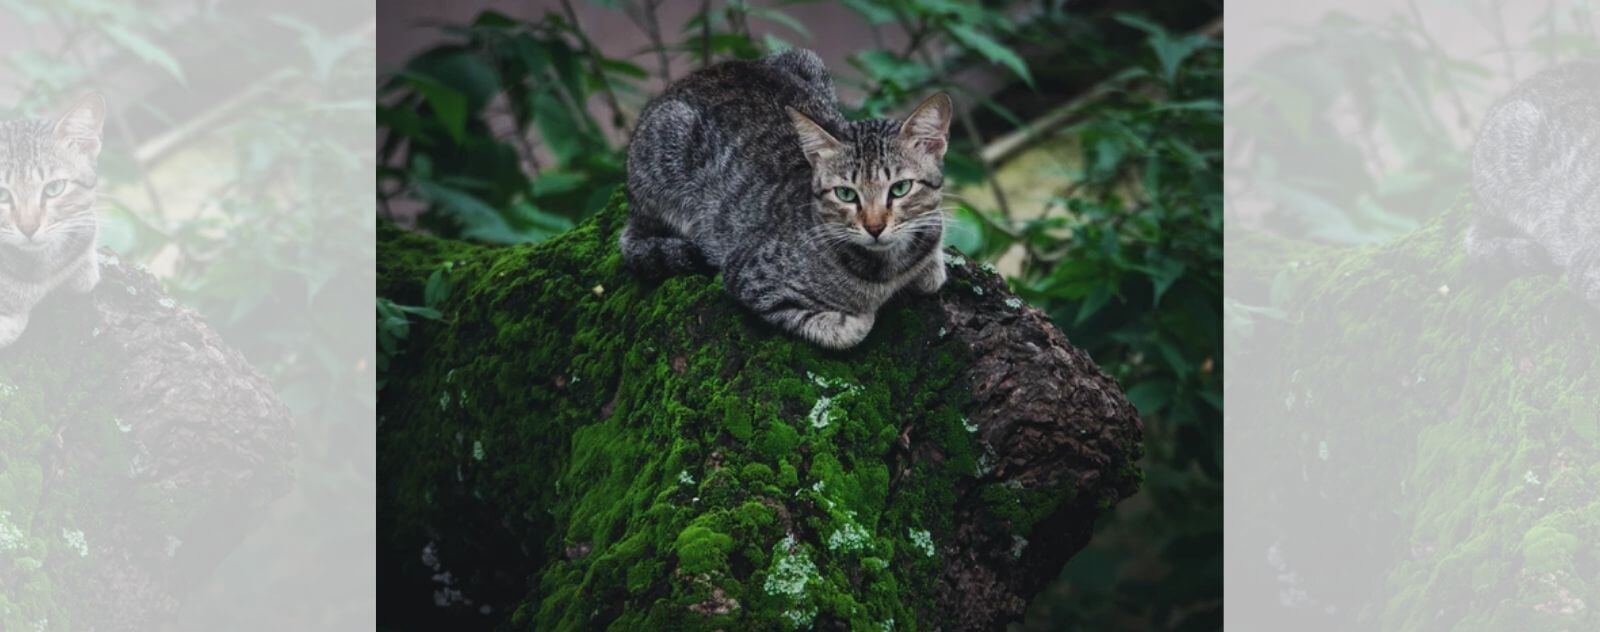 Gato gris acostado sobre un baúl con musgo en la naturaleza